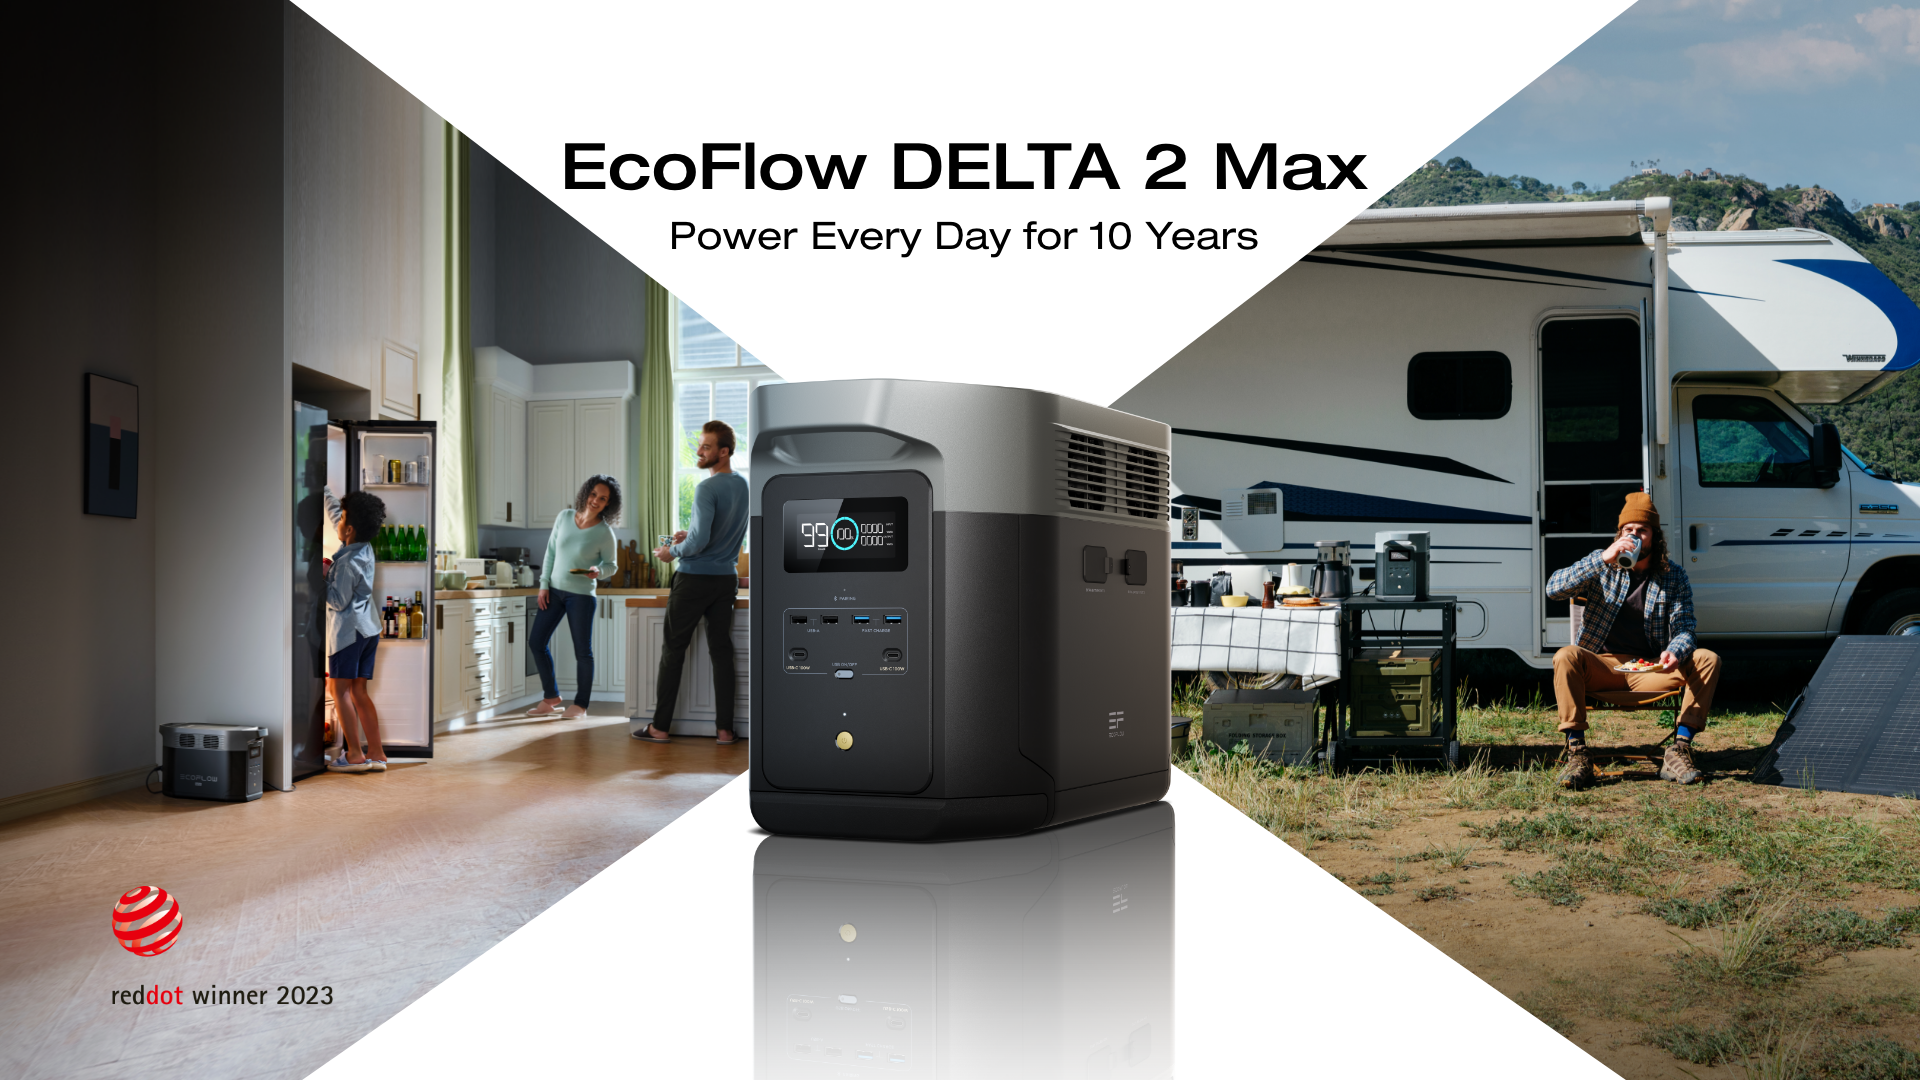 ecoflow-delta2max-01.png"